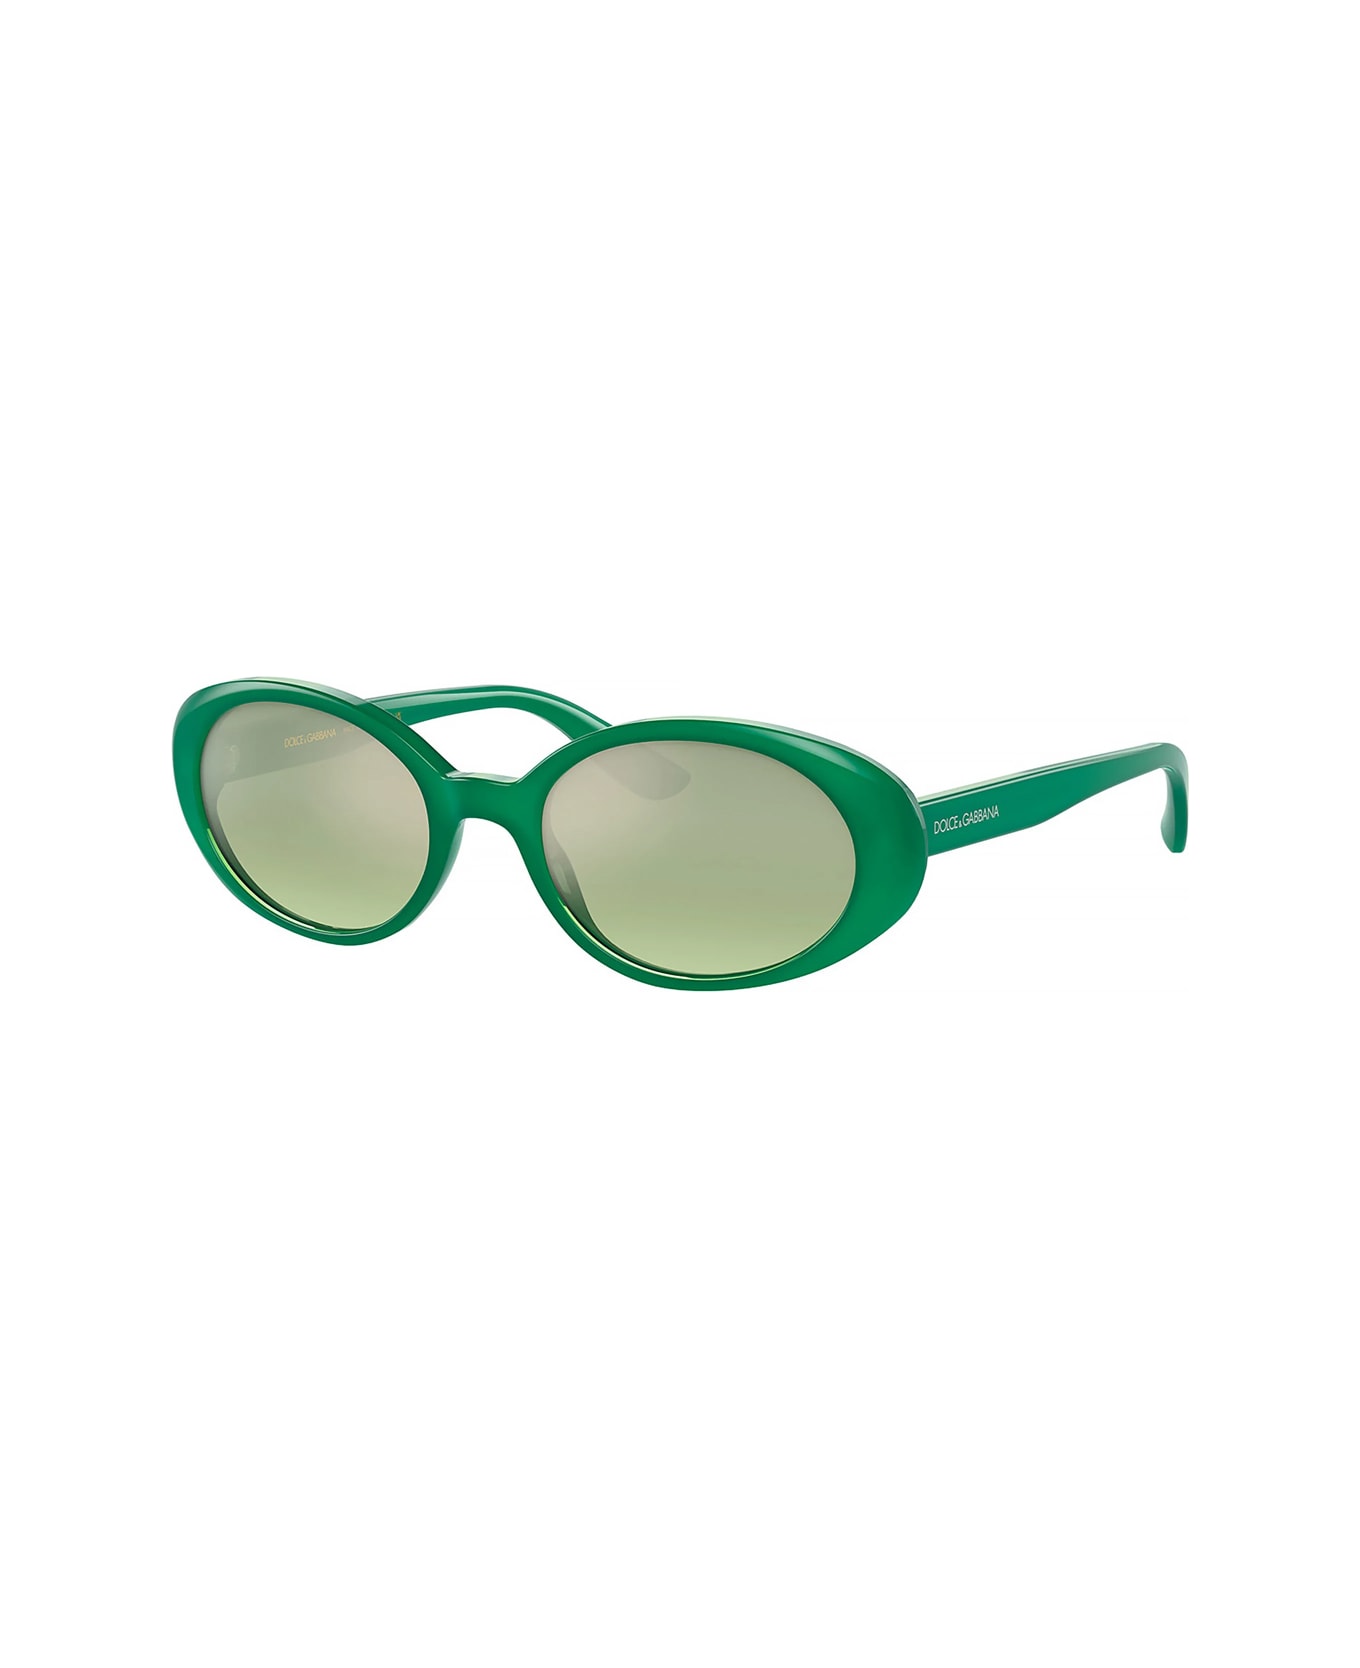 Dolce & Gabbana Eyewear Dg4443 306852 Sunglasses - Verde